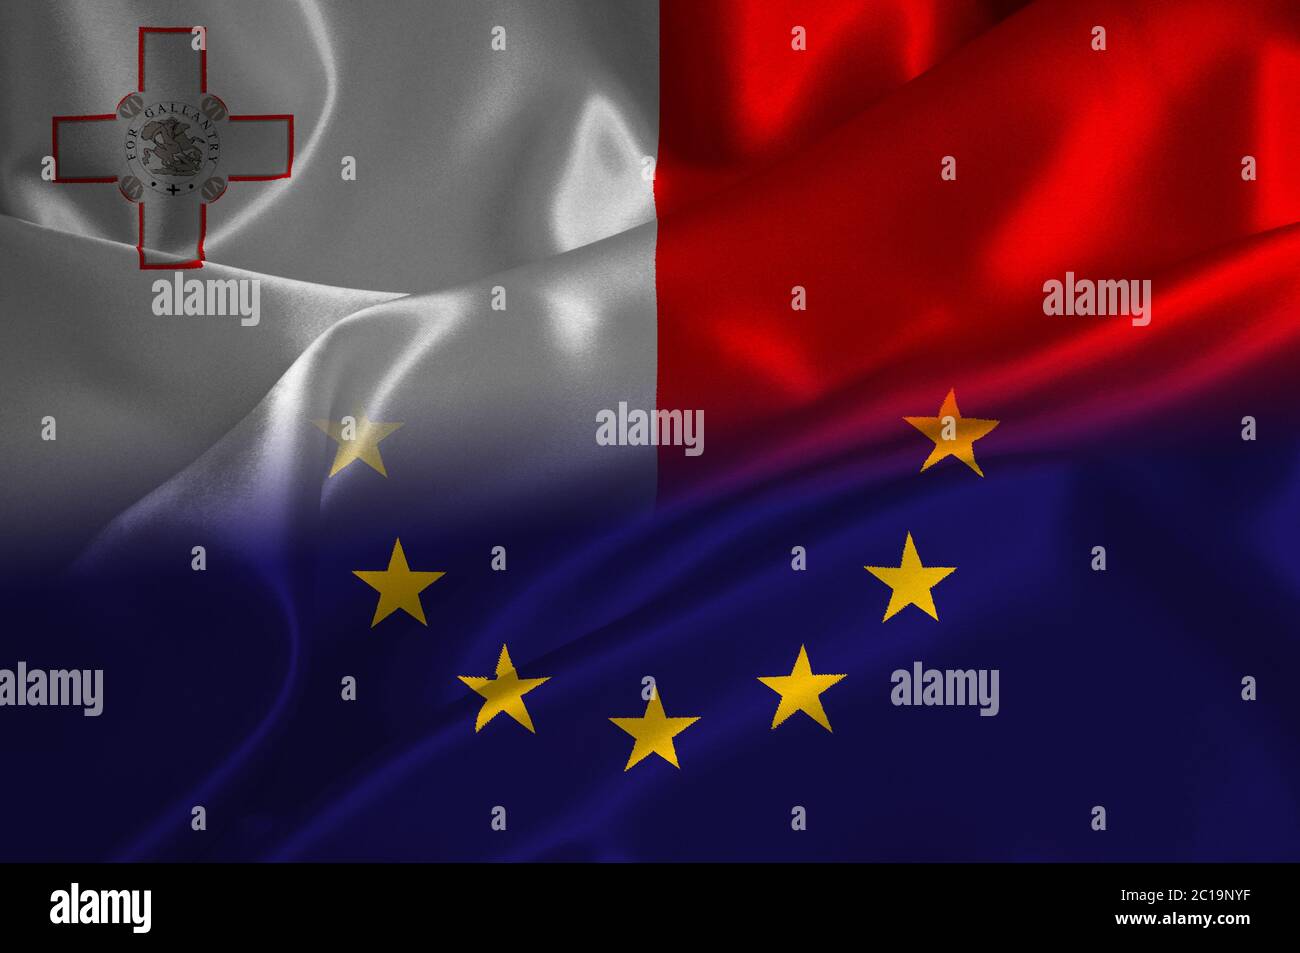 EU flag and Malta flag on satin texture Stock Photo